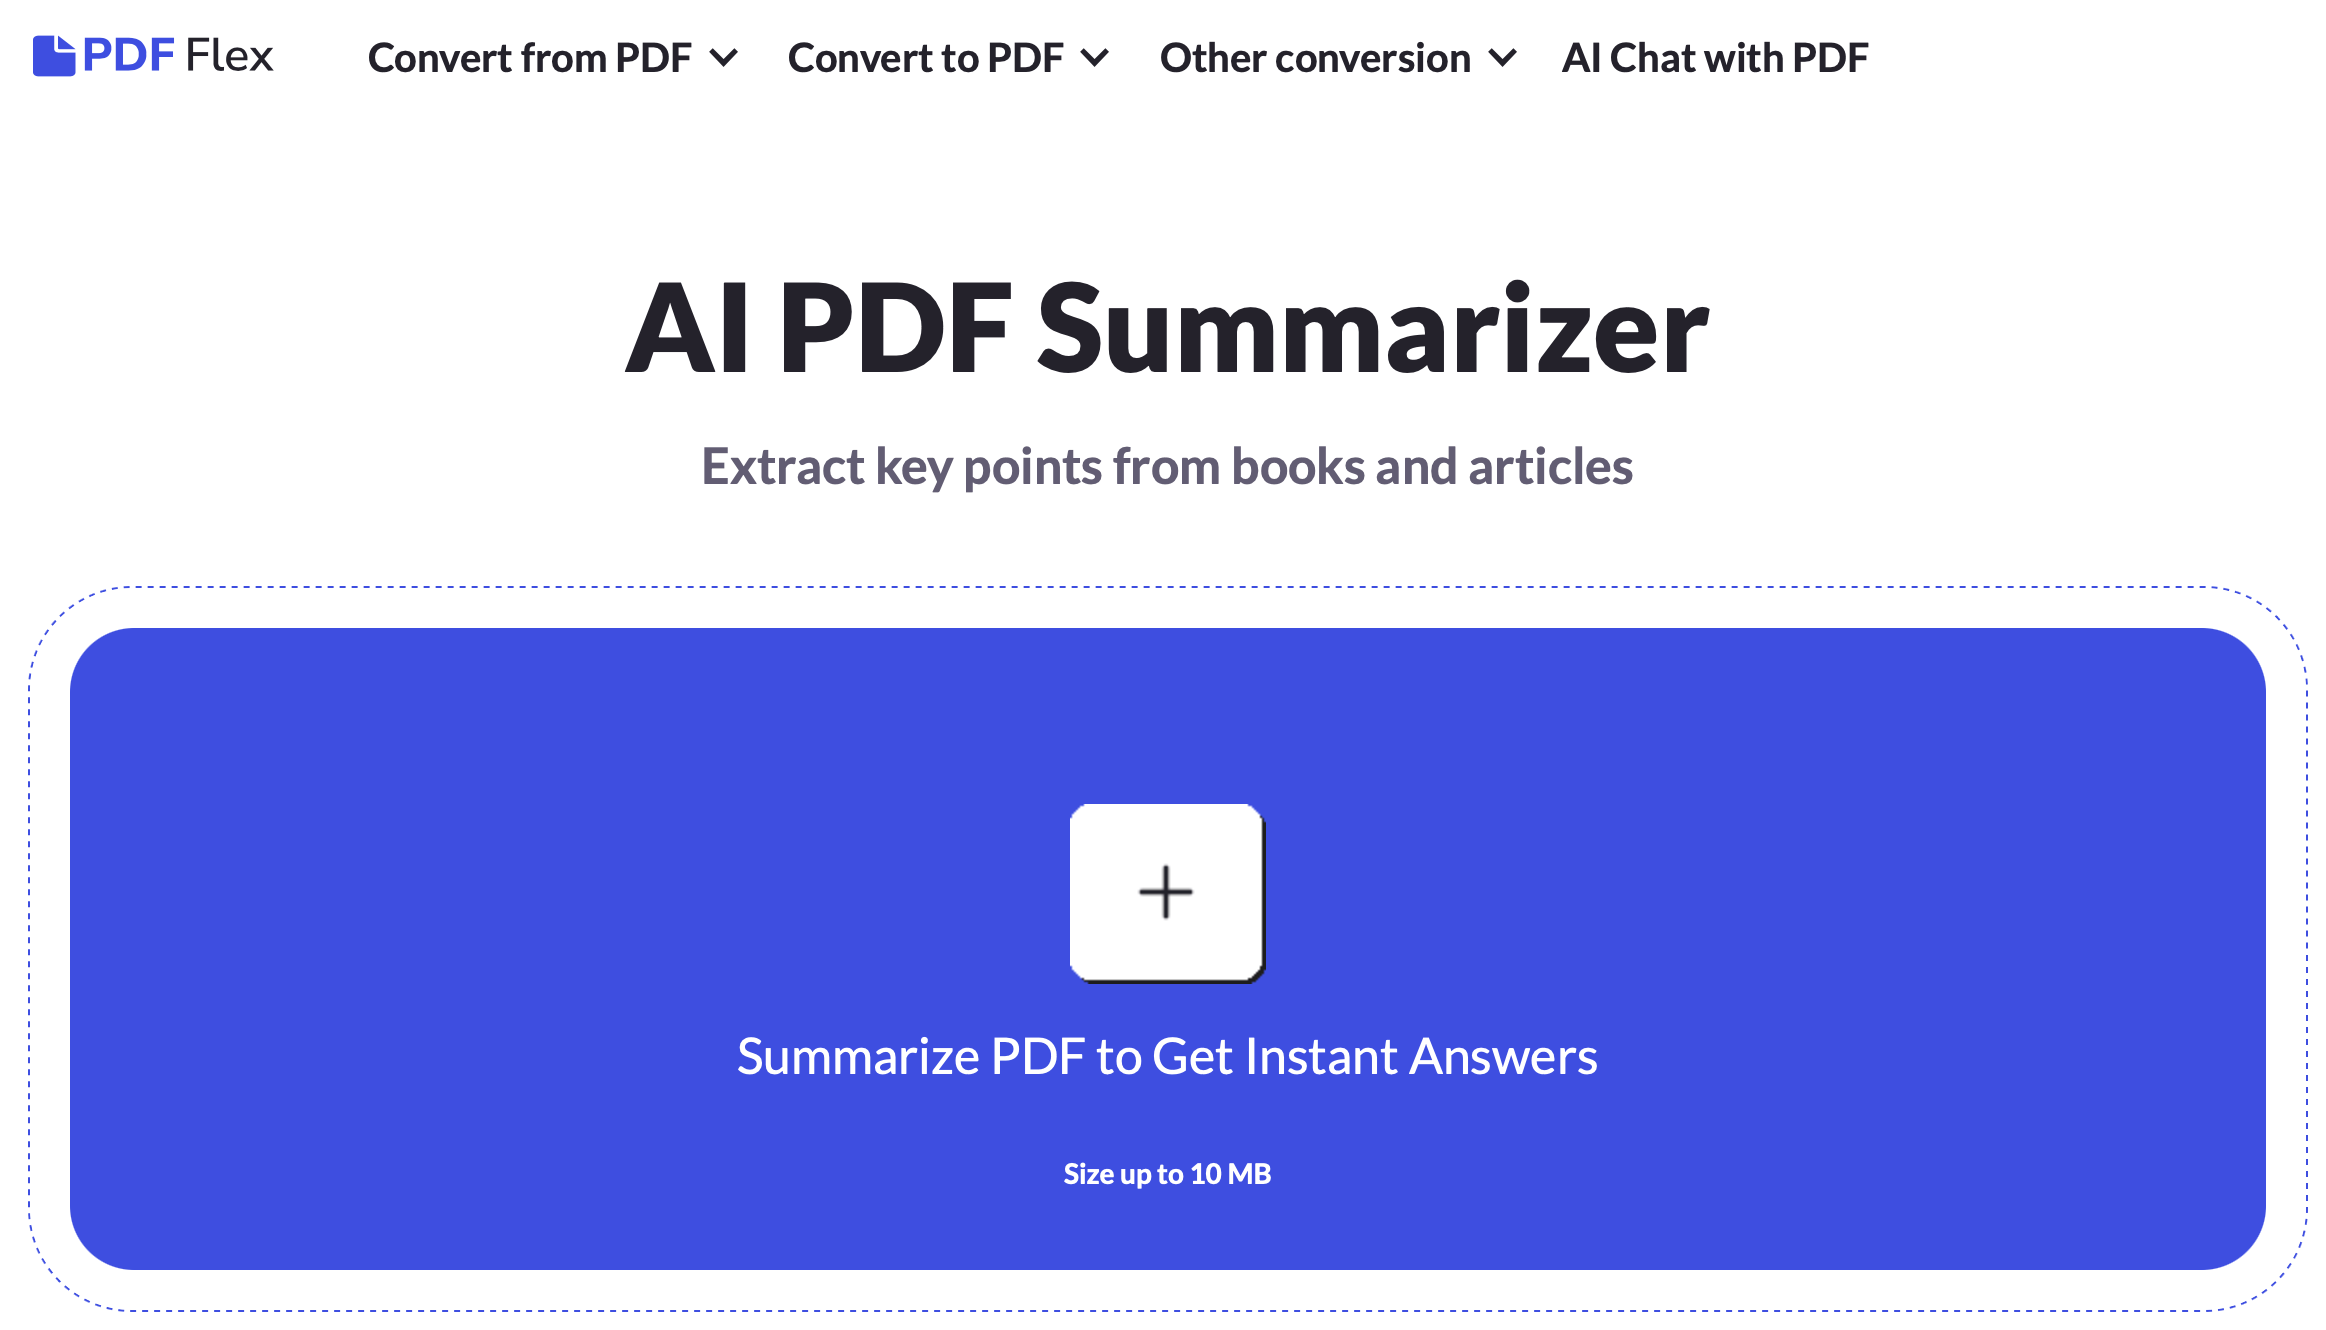 PDF Flex AI Chat